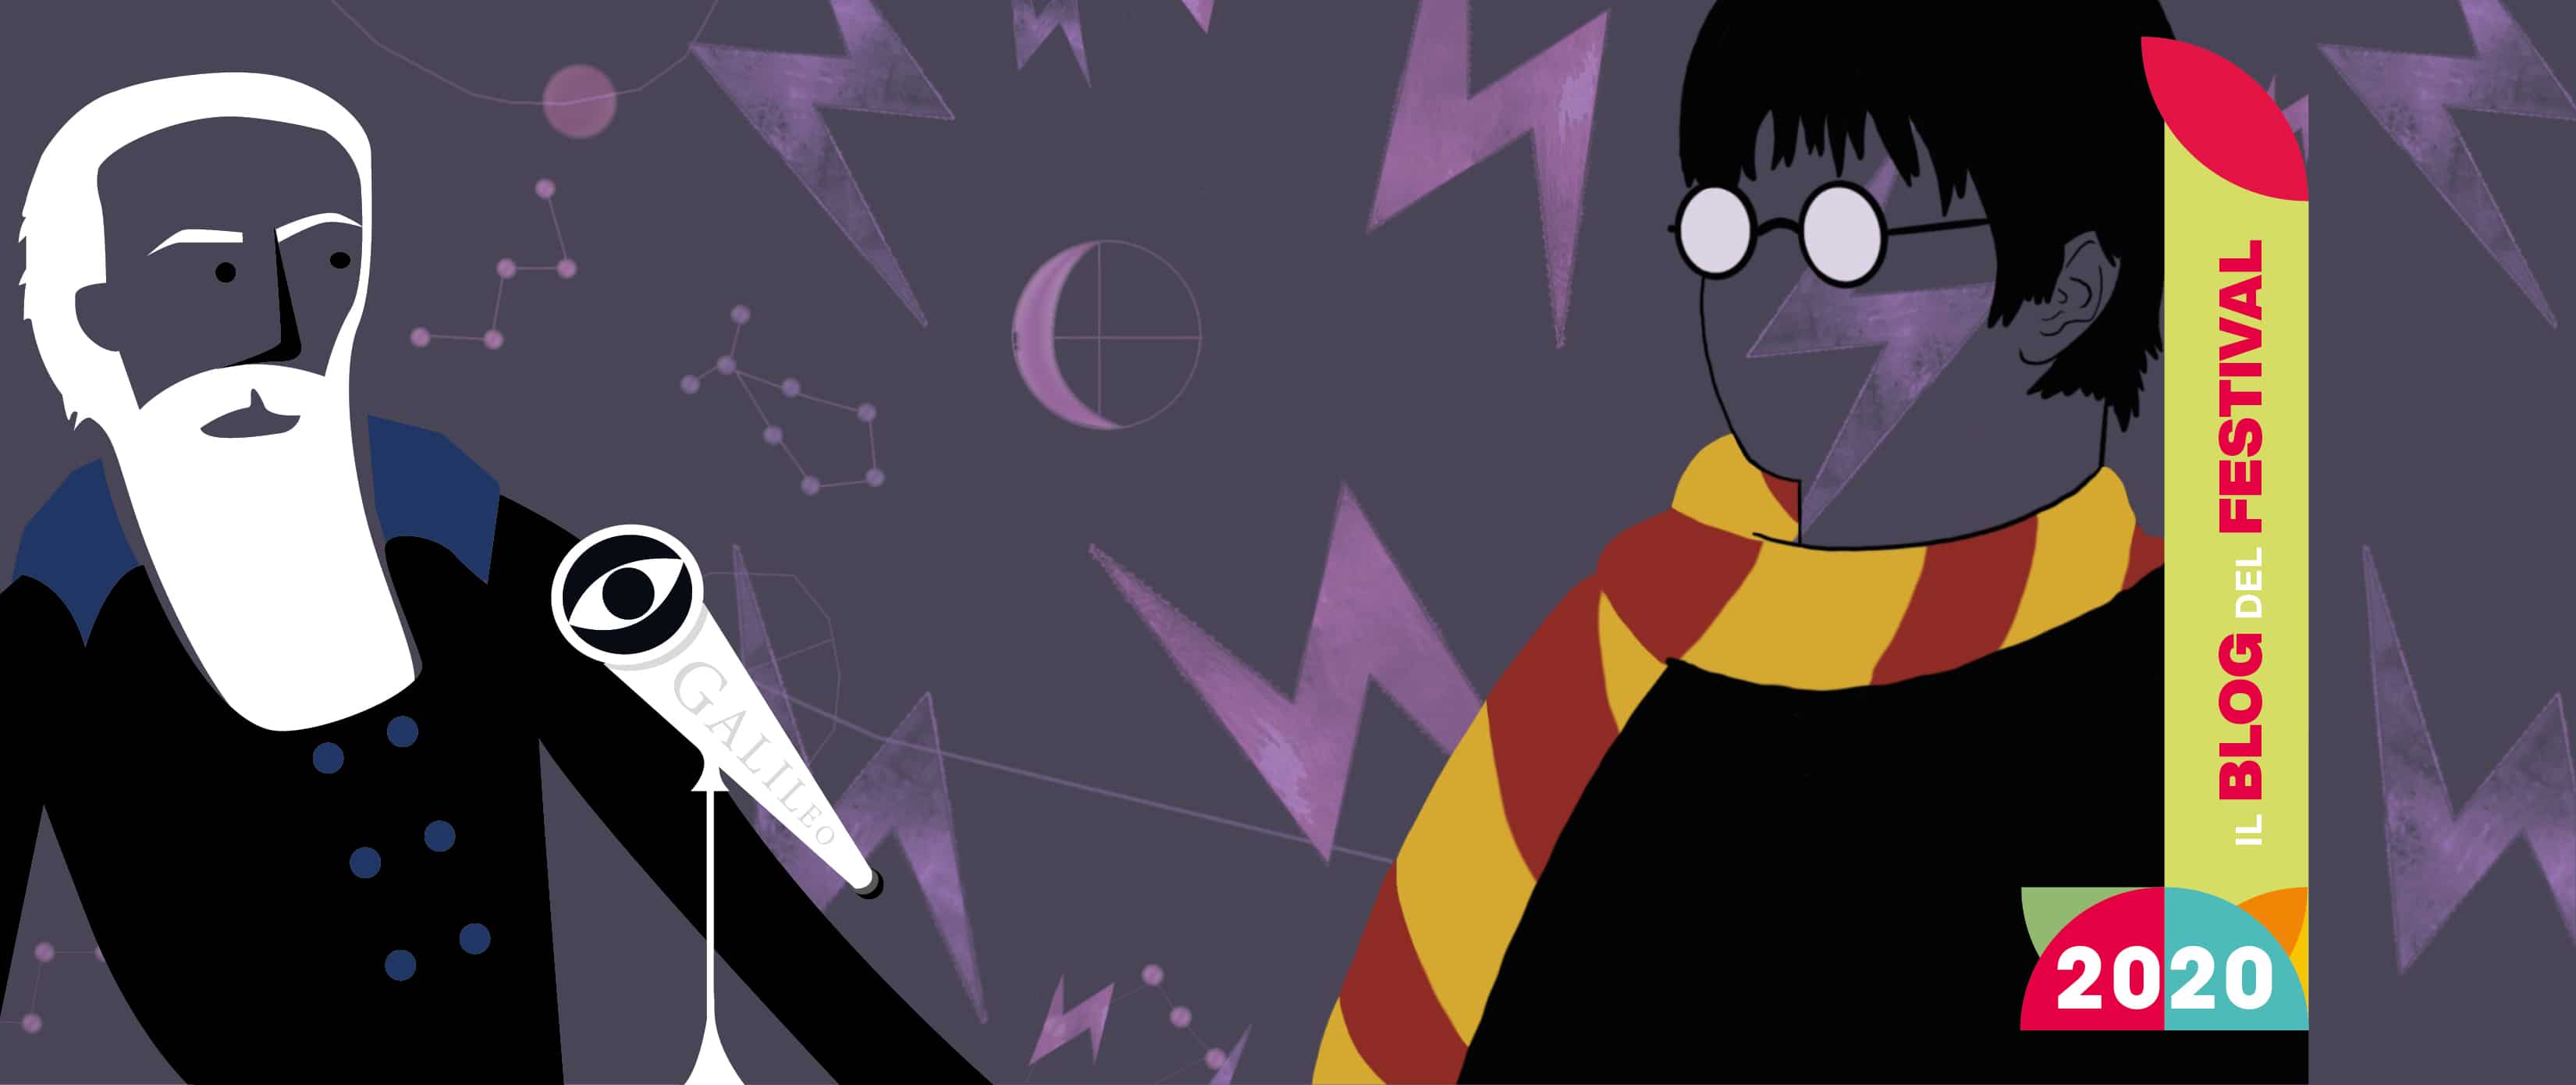 Galileo Galilei e Harry Potter: cosa distingue la scienza dalla magia?